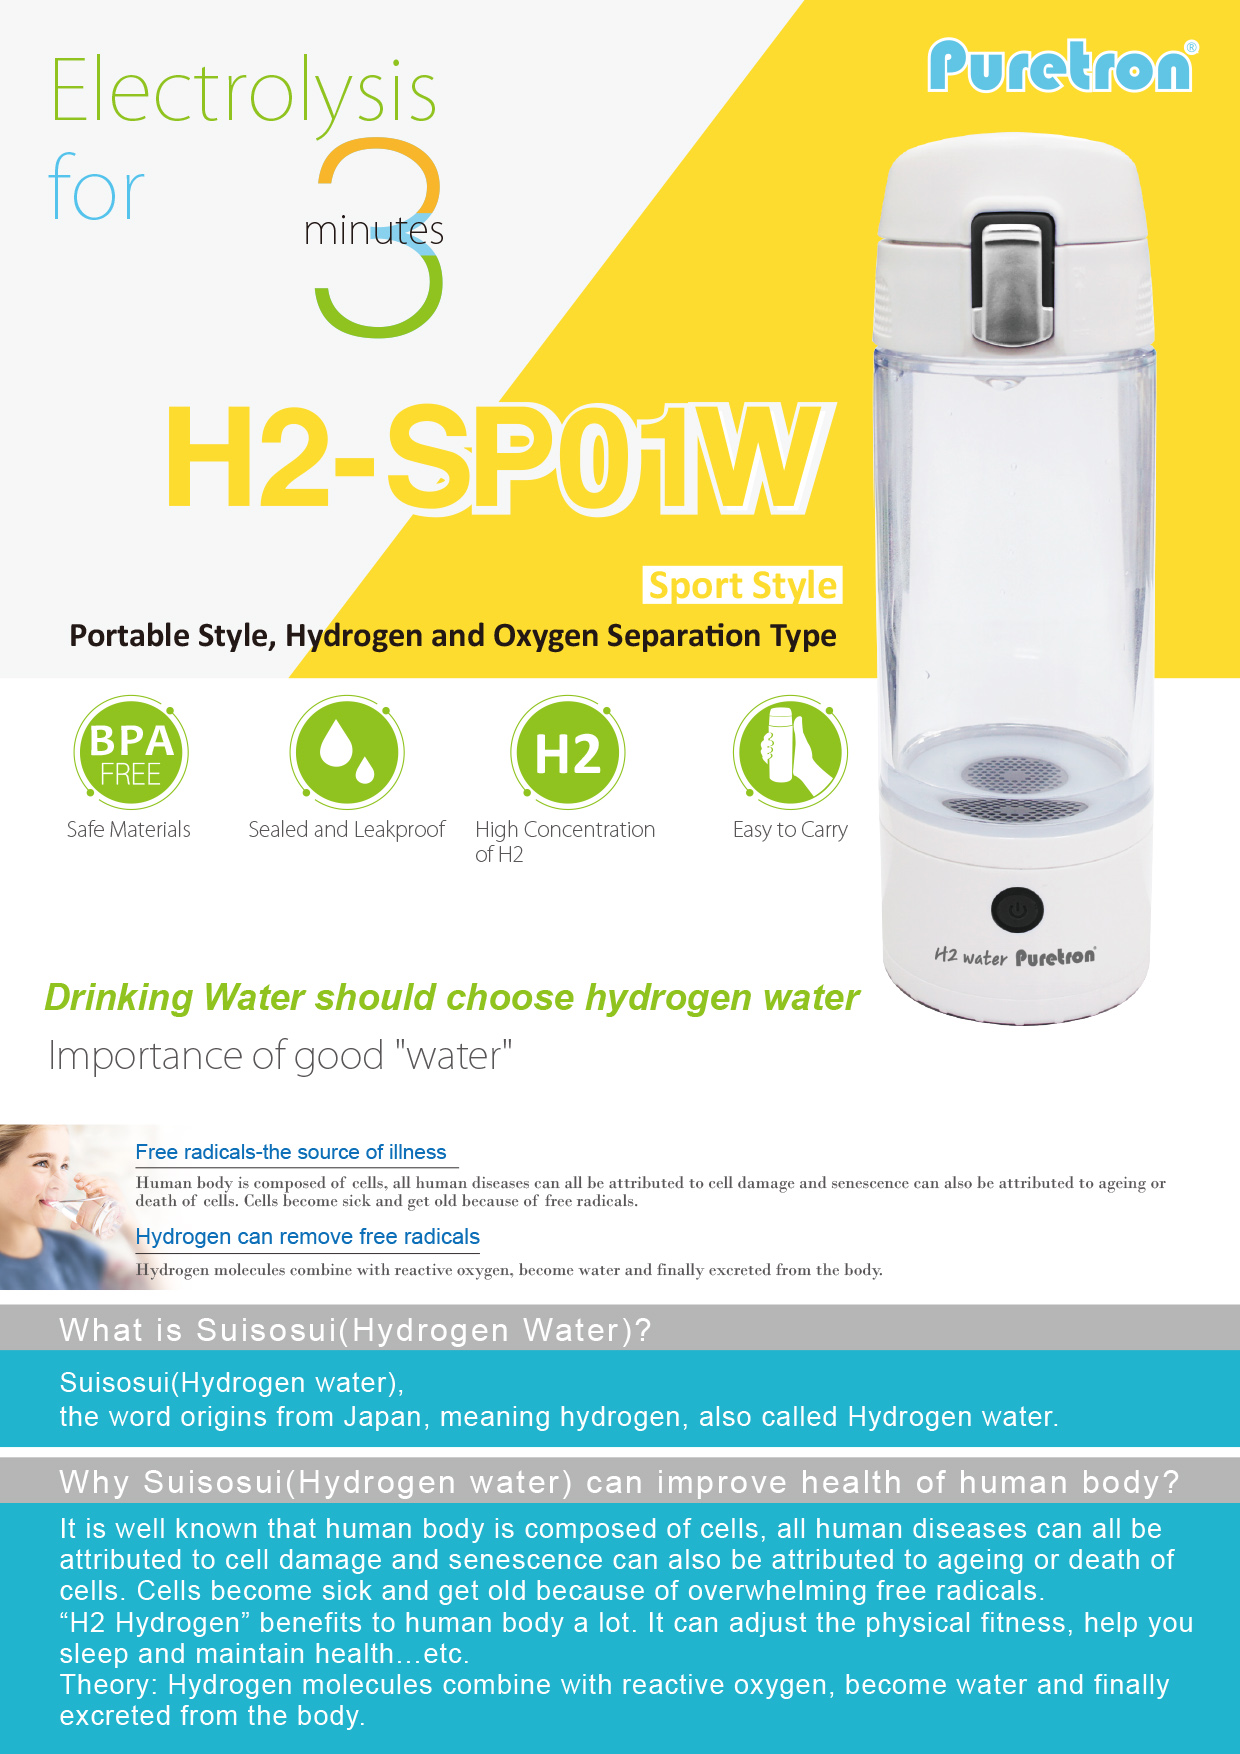 H2-SP01W hydrogen water bottle